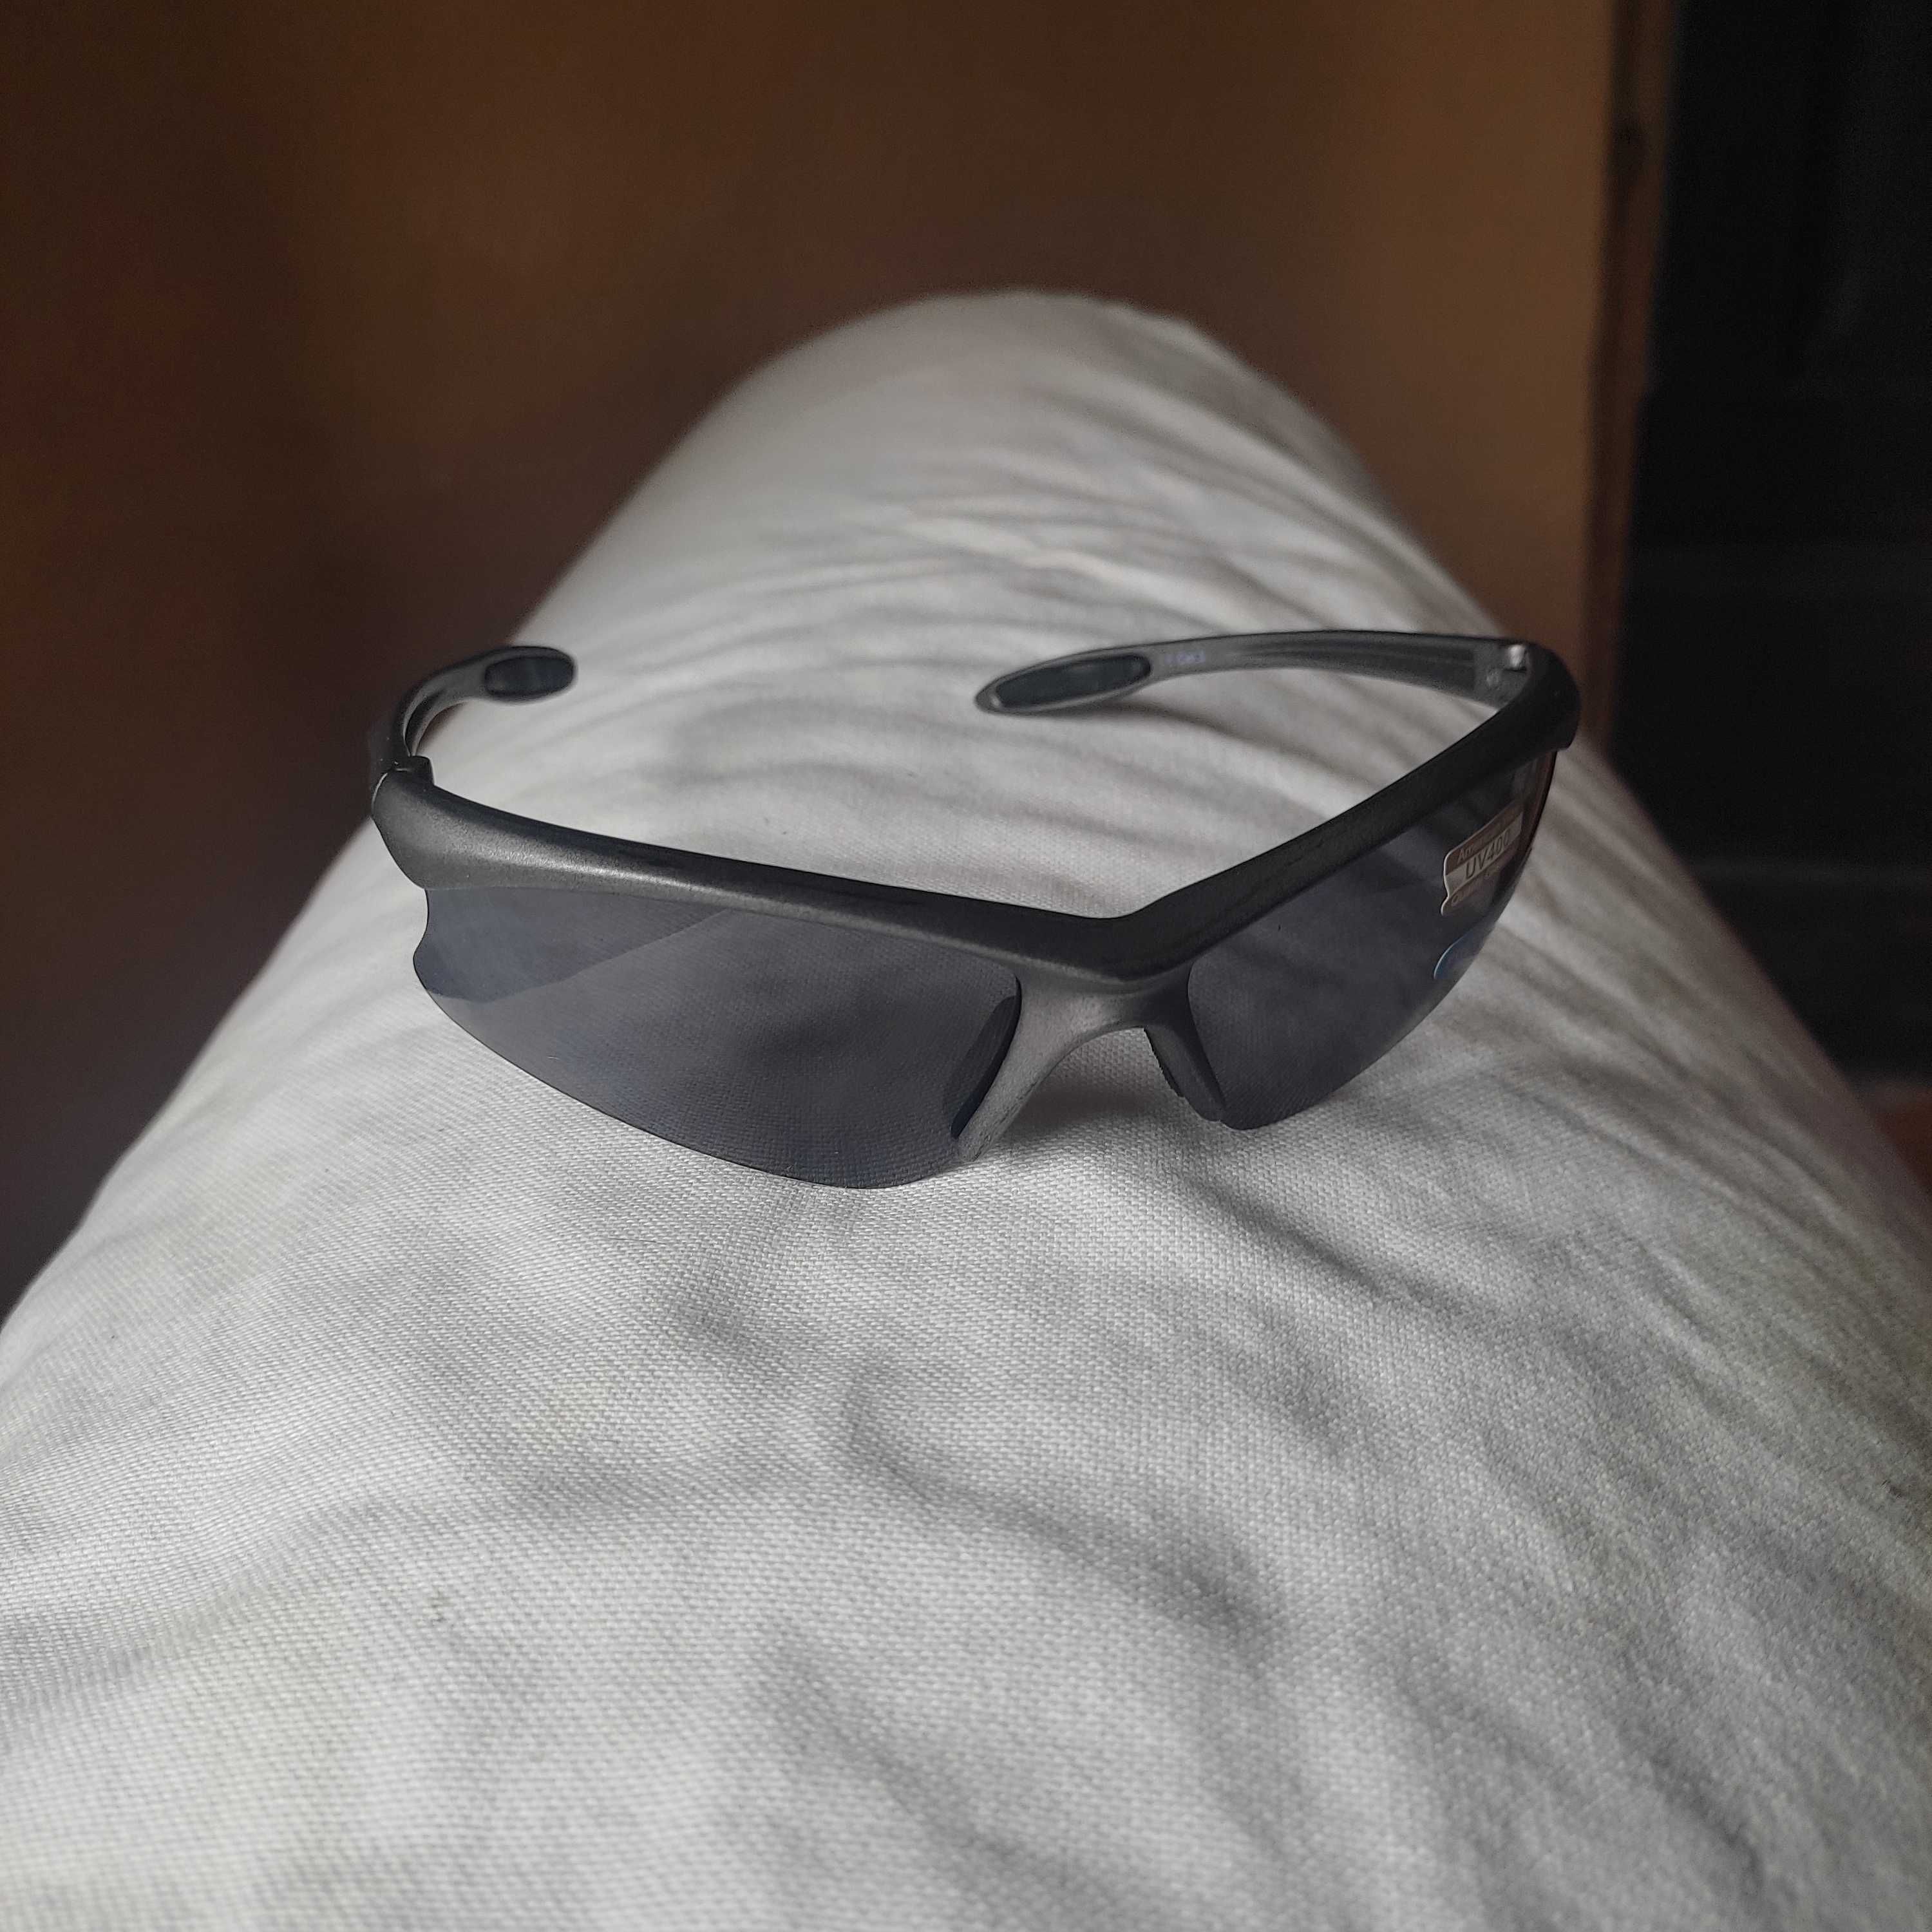 Nowe, sportowe okulary przeciwsłoneczne z 3 wymiennymi filtrami.